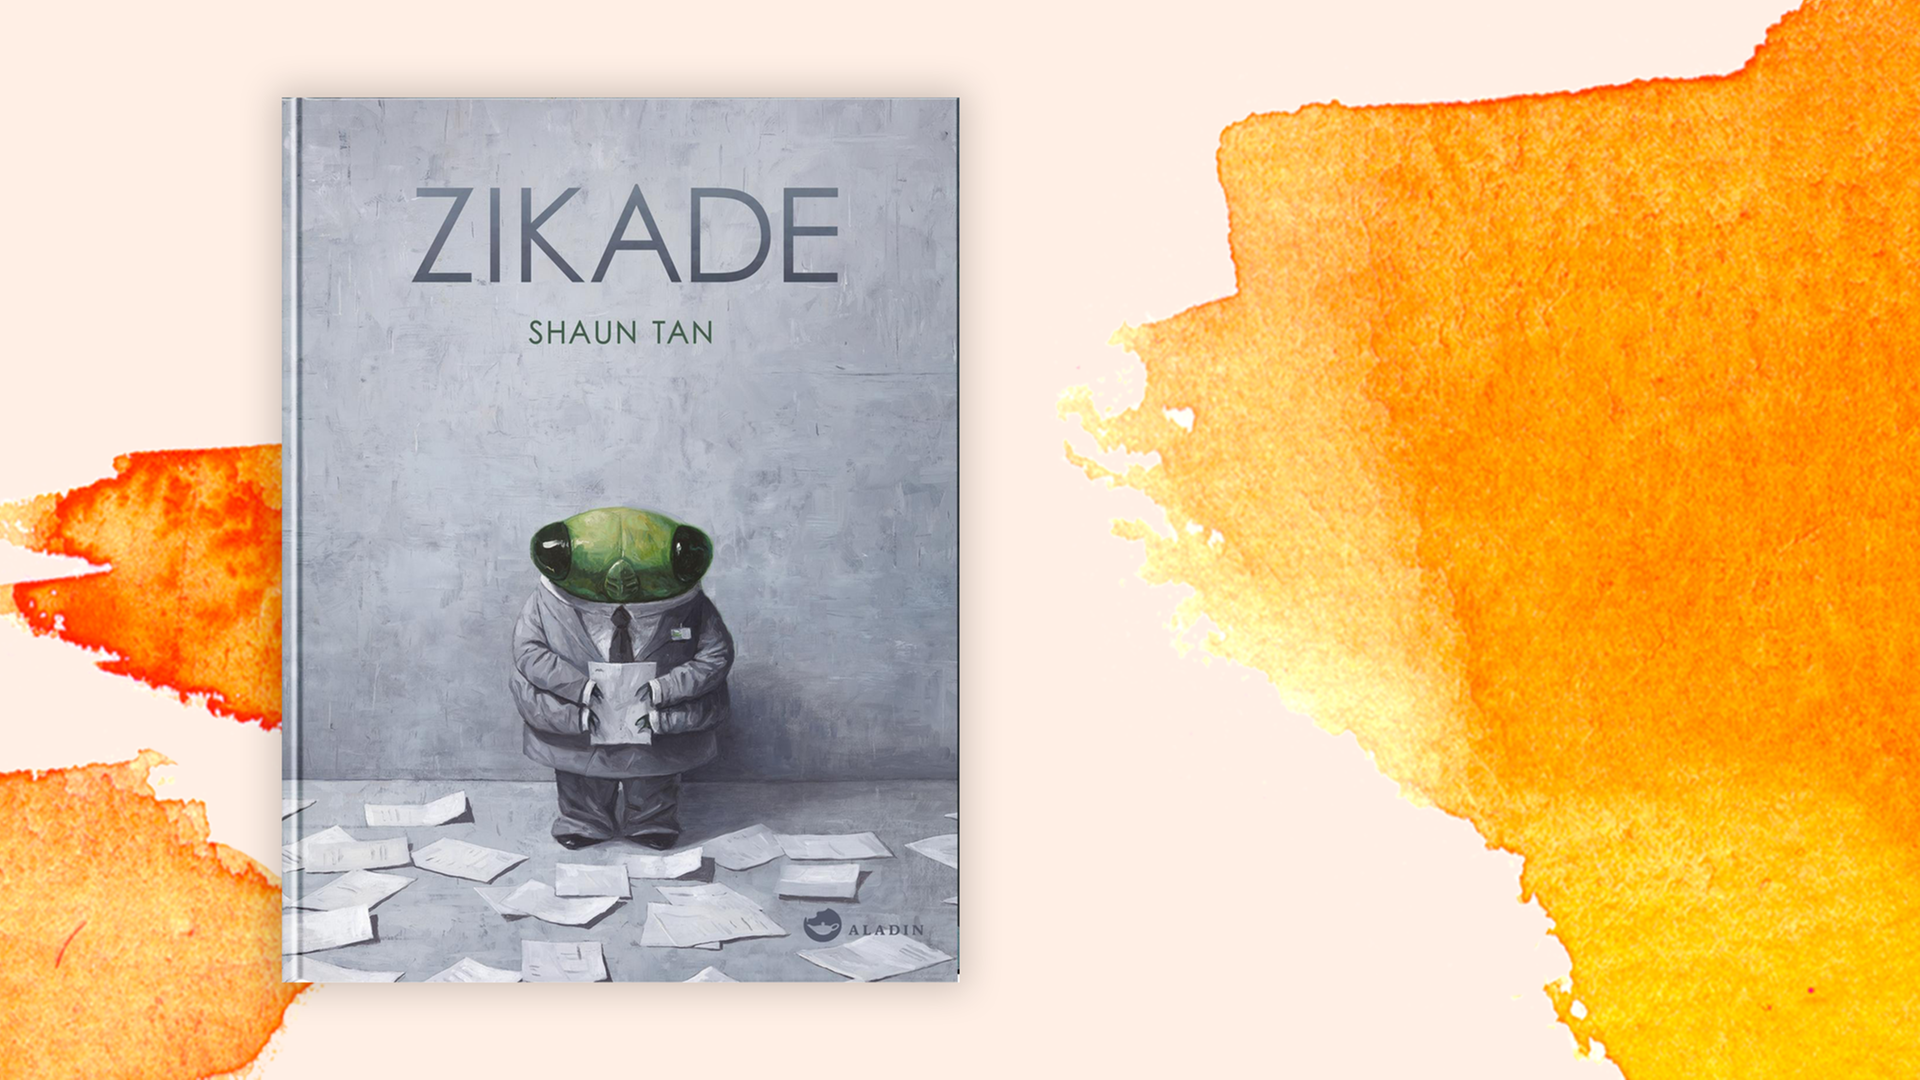 Zu sehen ist das Cover des Buches "Zikade" von Shaun Tan.